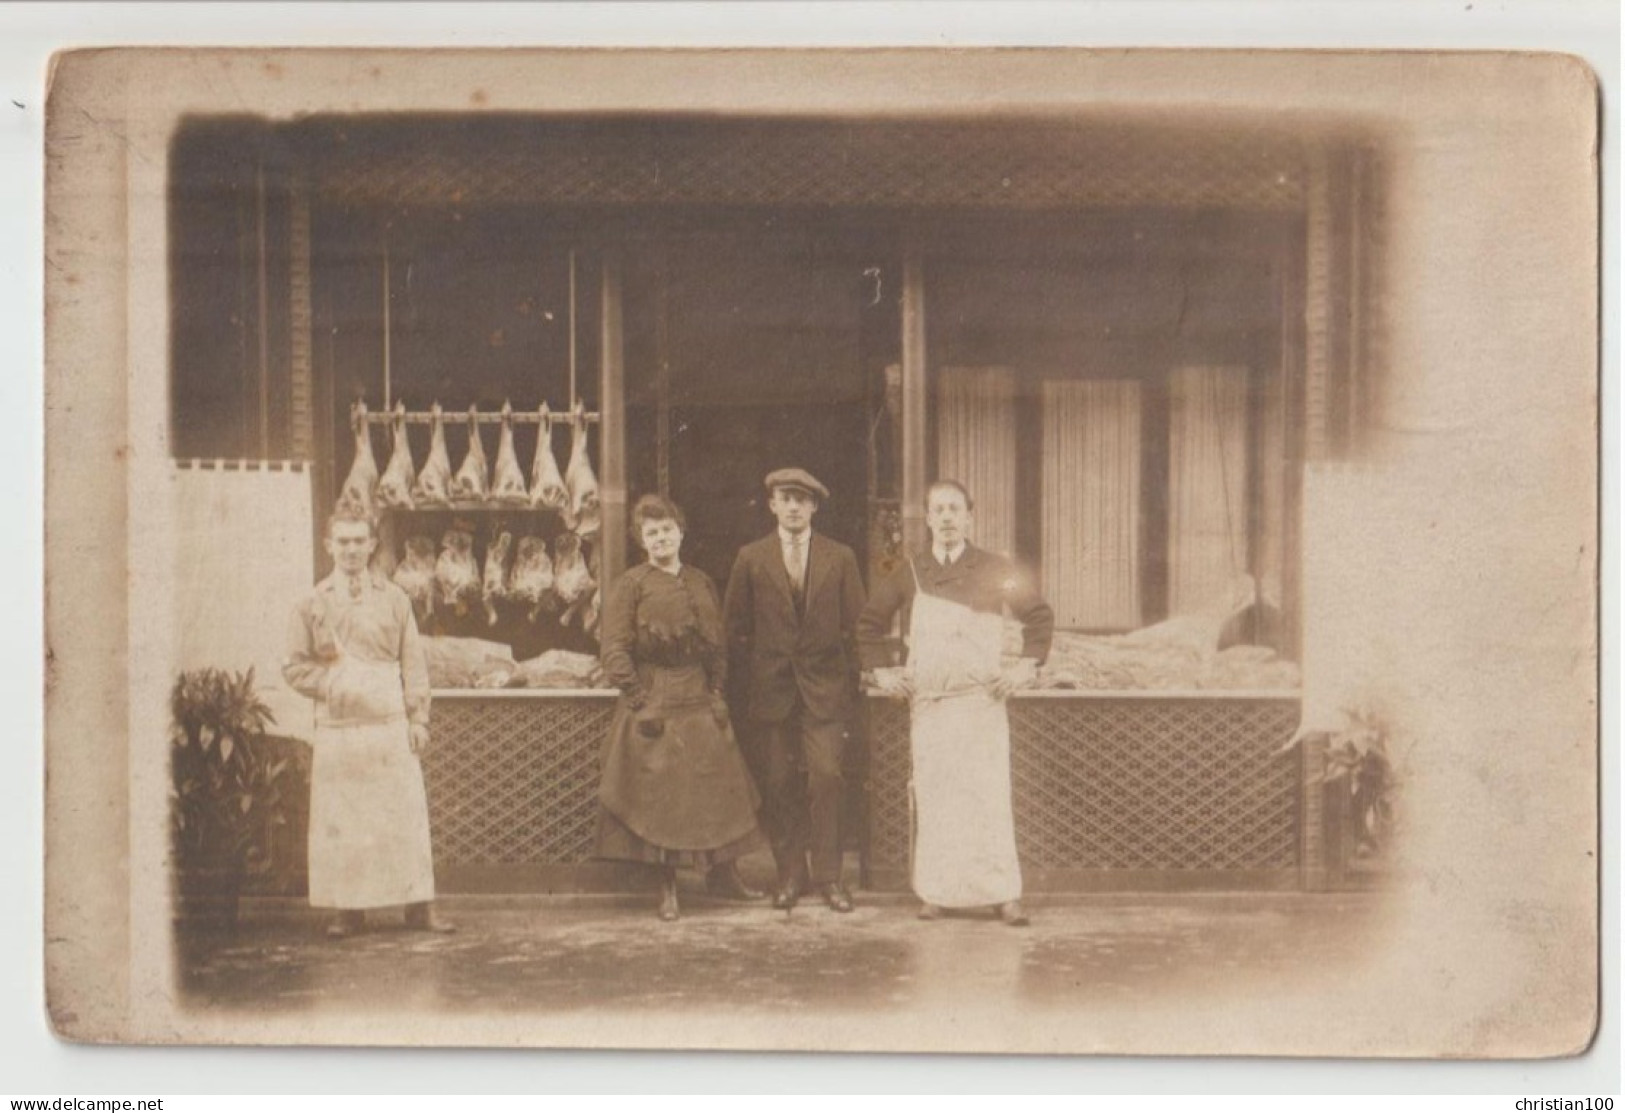 CARTE PHOTO ECRITE 1917 - BOUCHERS AVEC TABLIER DEVANT UNE BOUCHERIE - QUARTIERS DE VIANDE - GIGOT ET GIBIER -z R/V Z- - Shops